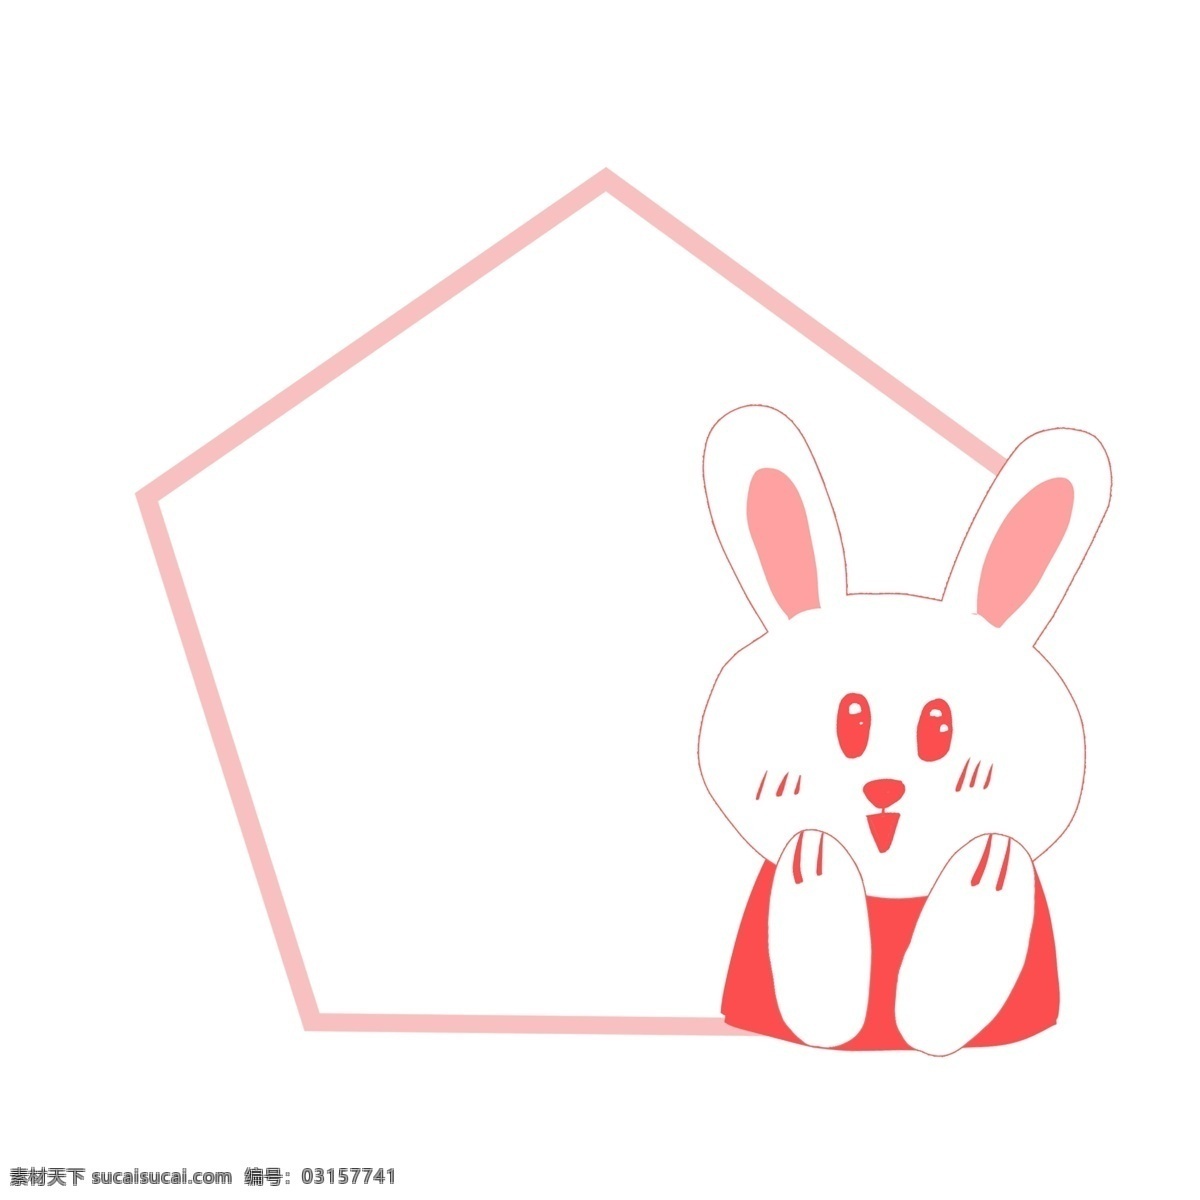 兔子 乖乖 装饰 边框 兔子乖乖 小兔子 小白兔 小 动物 卡通边框 文本边框 可爱边框 粉色边框